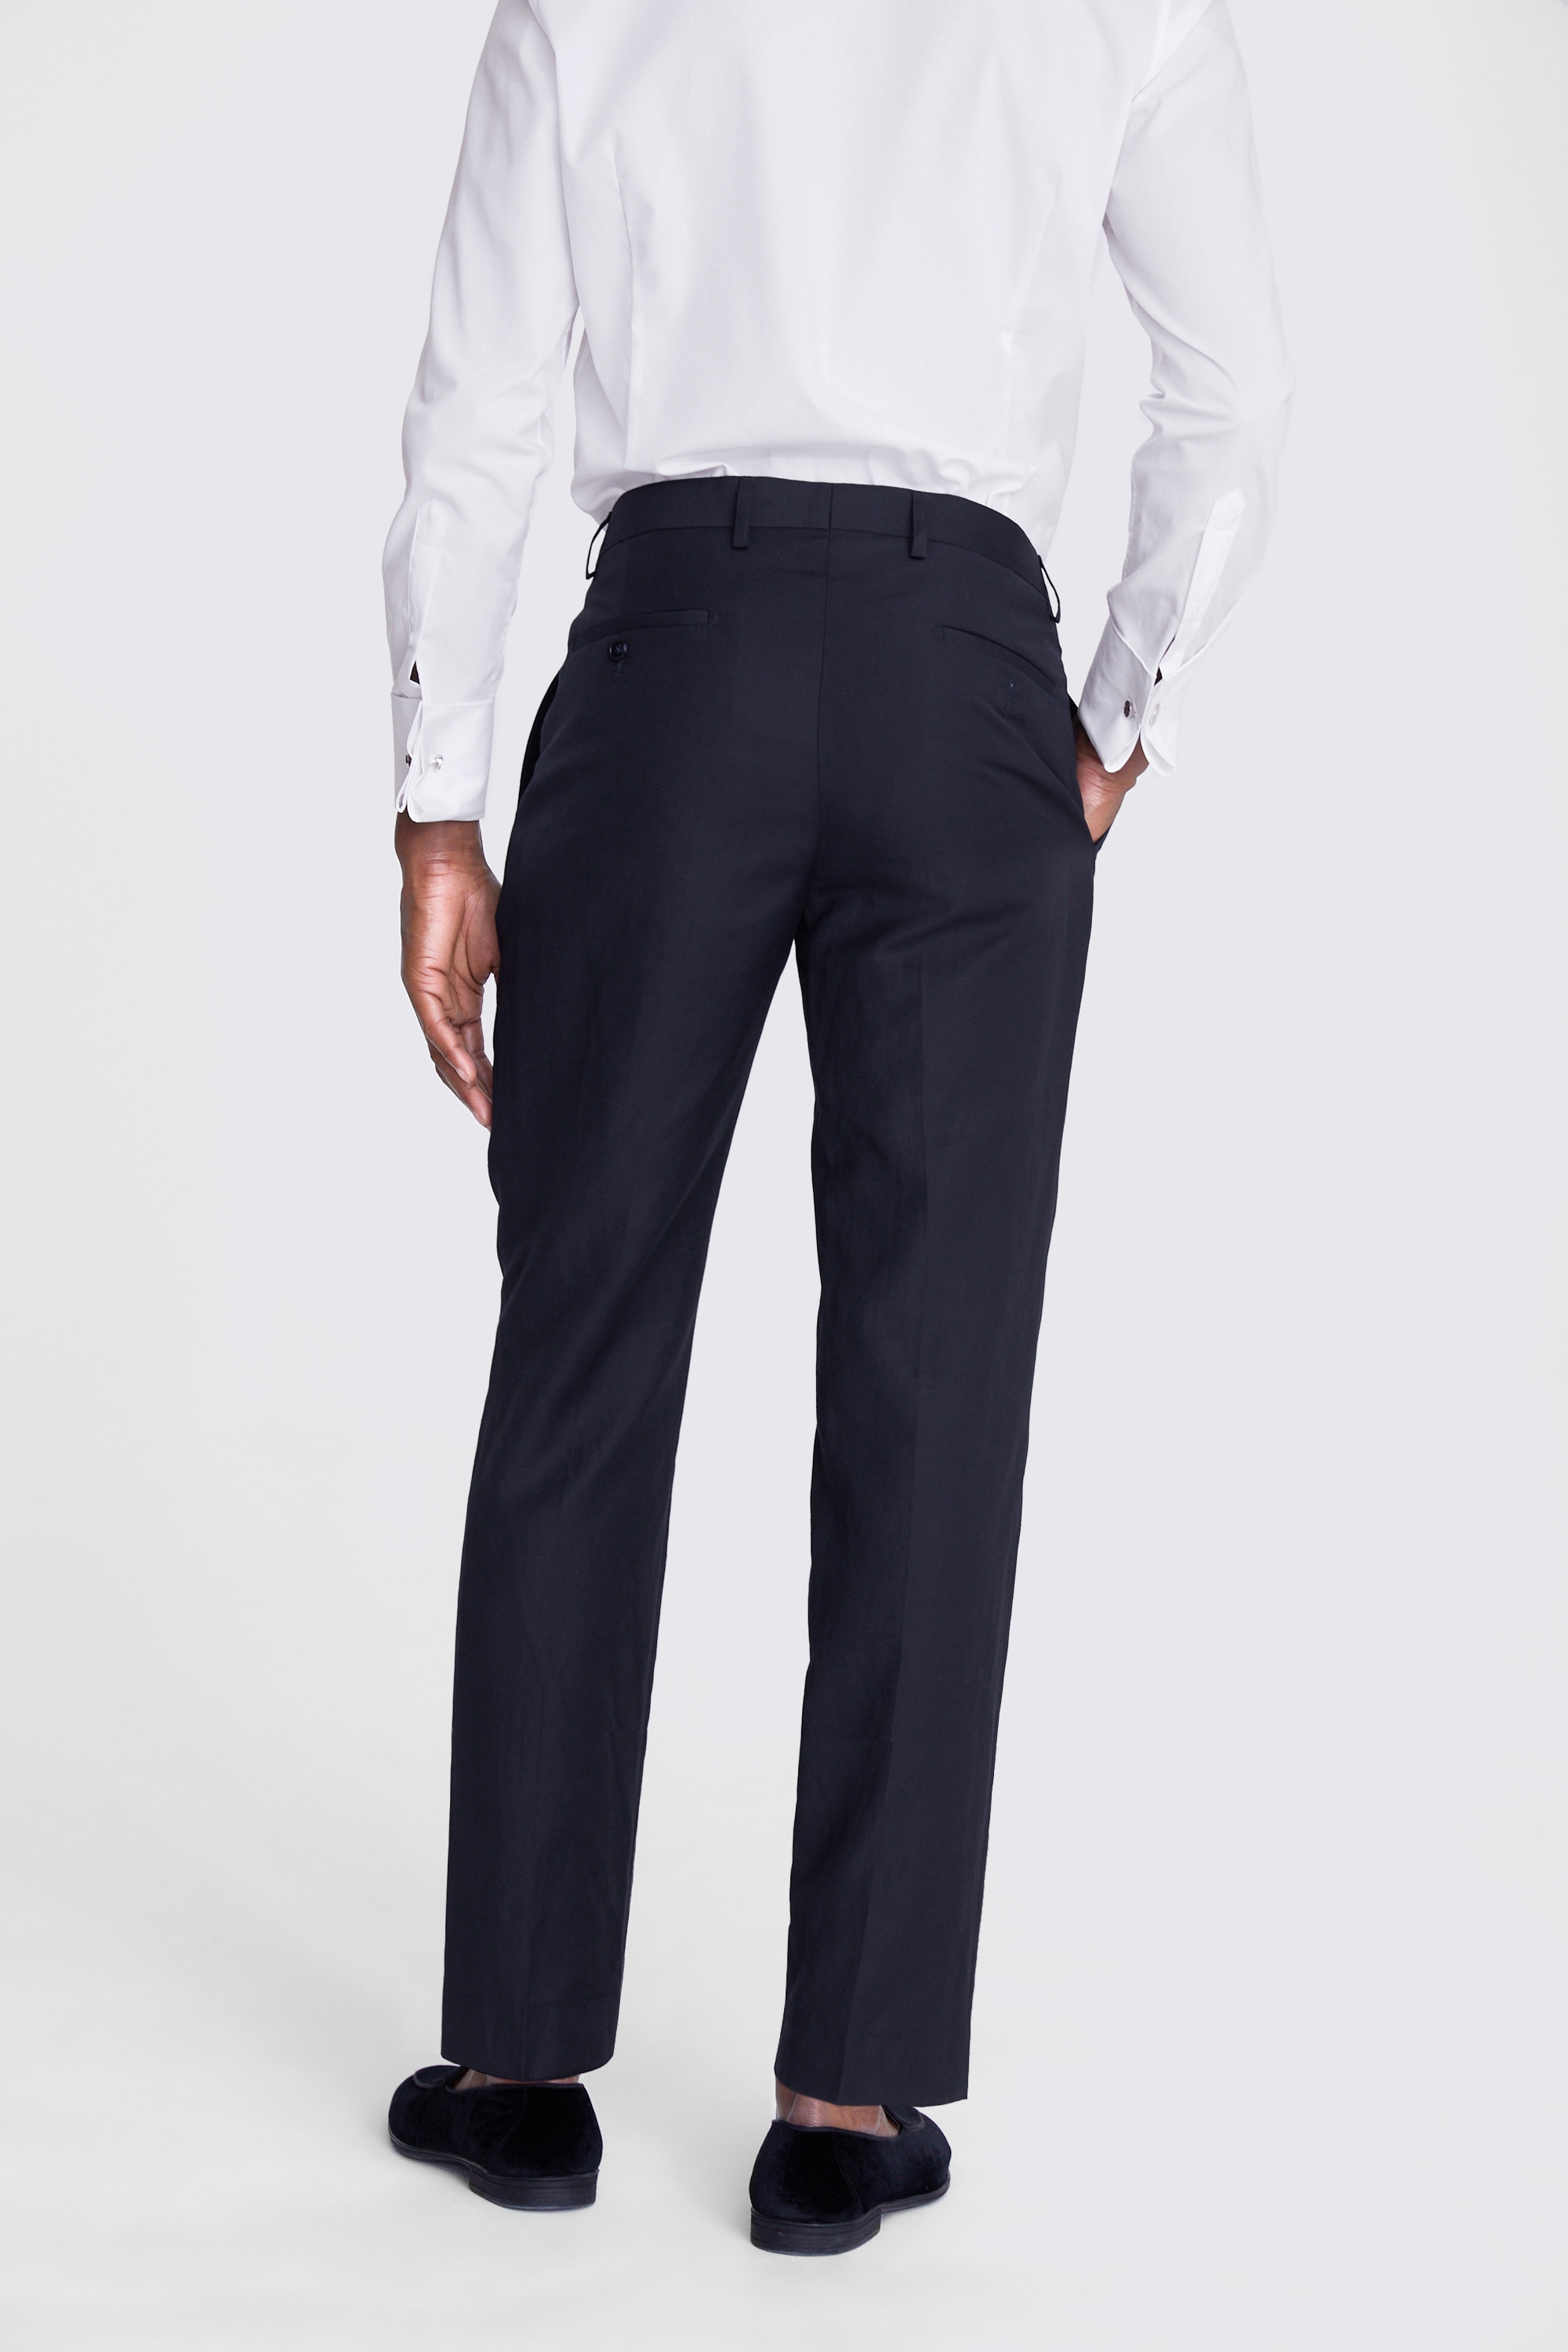 Slim Fit Navy Slub Trousers | Buy Online at Moss